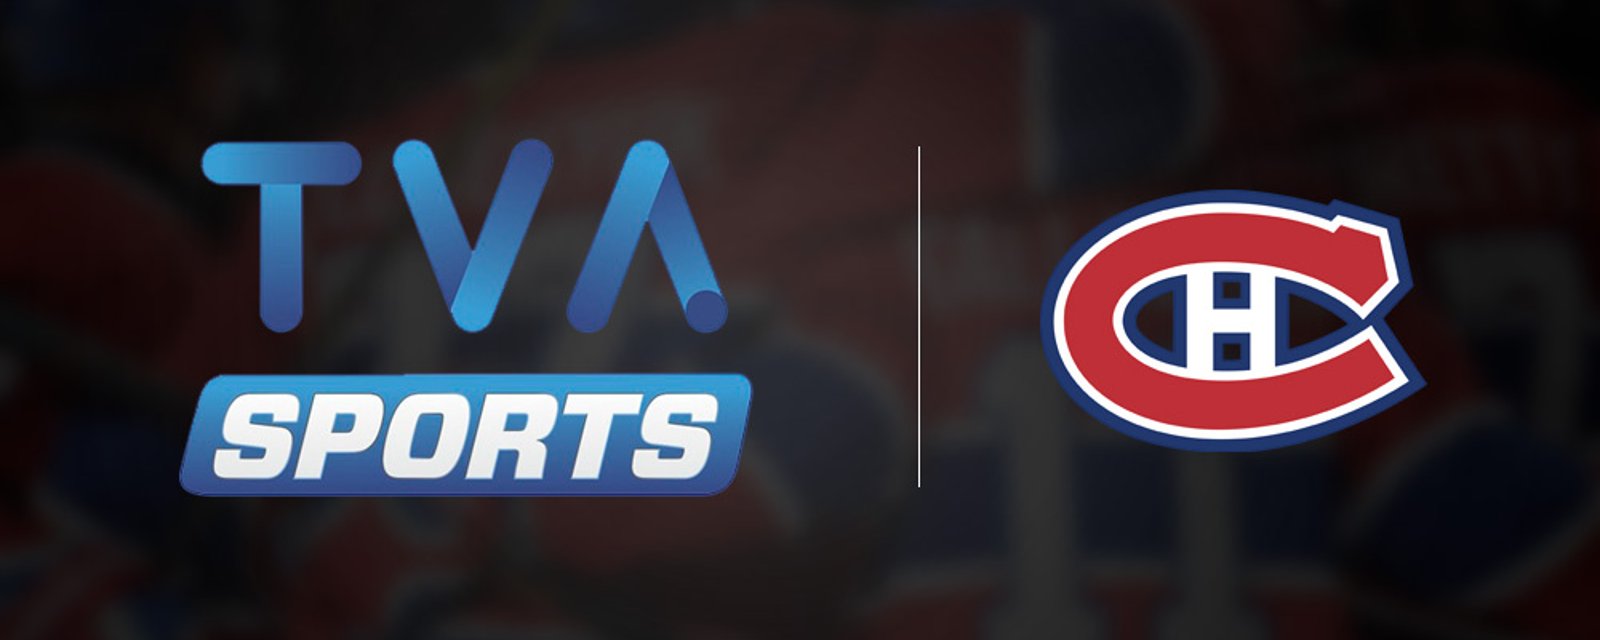 TVA Sports annonce la fin d'une de ses émissions quotidiennes